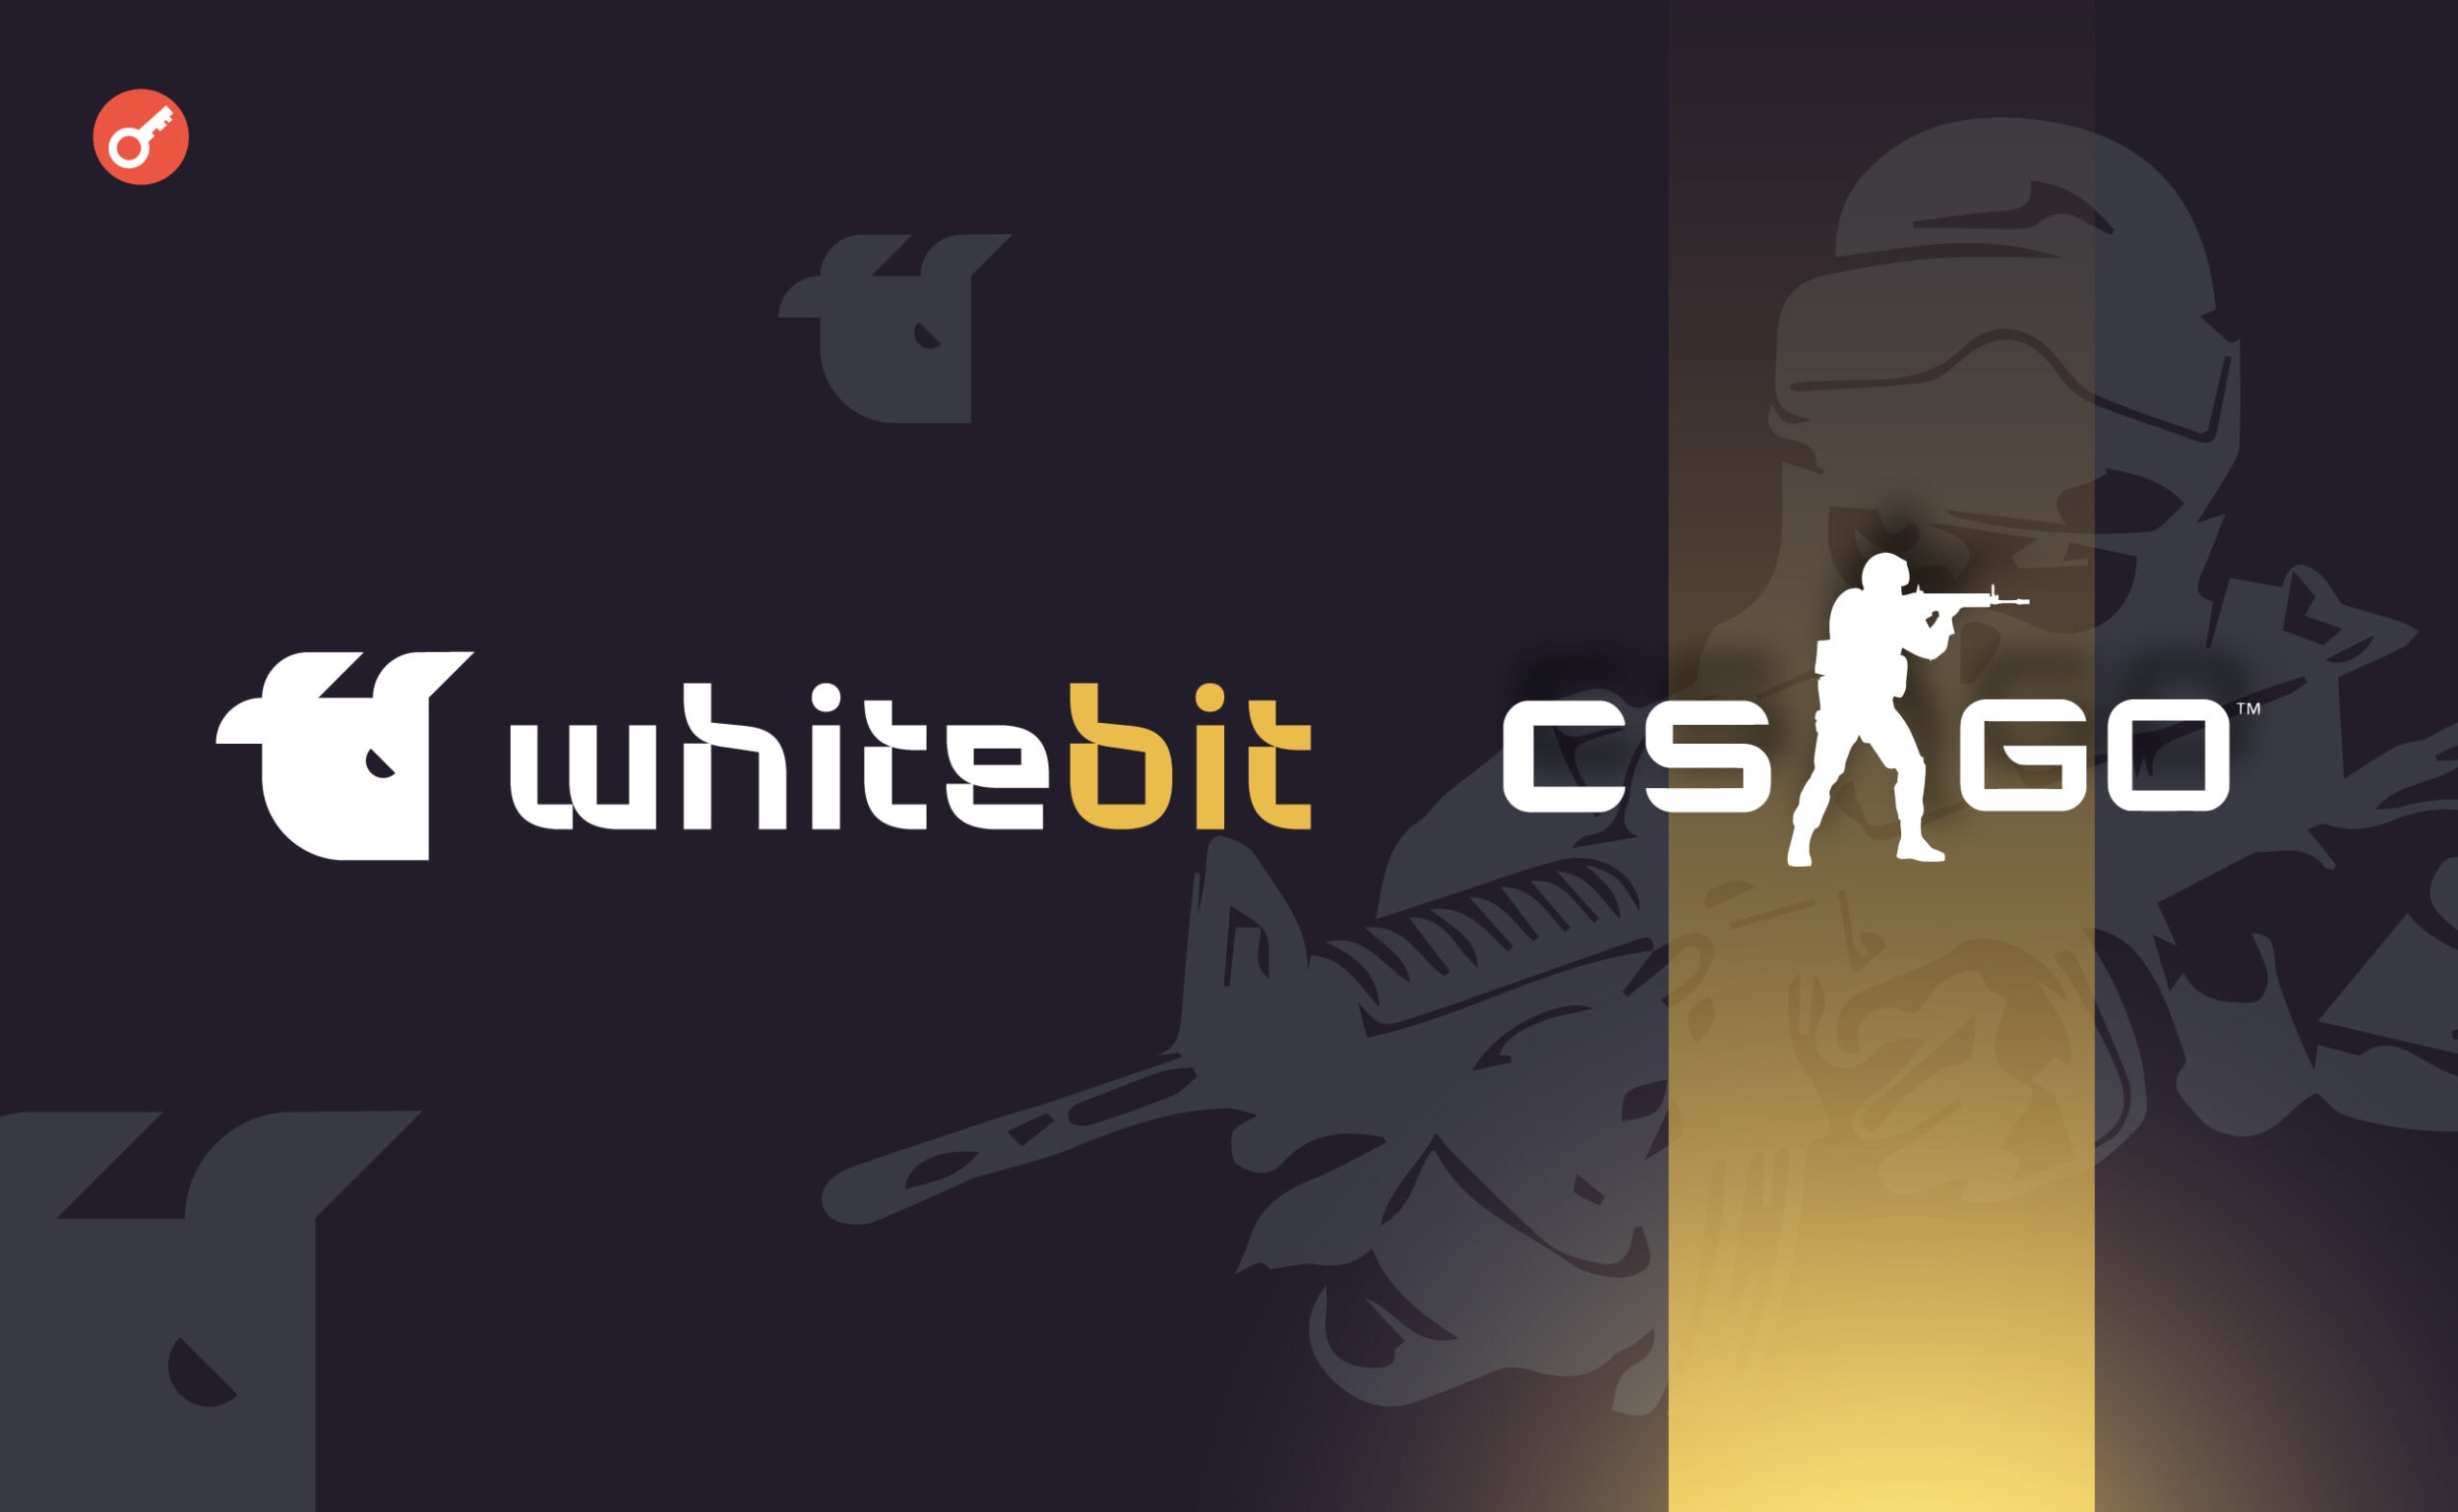 WhiteBIT ogłosił turniej CS:GO z nagrodami w kryptowalutach. Główny kolaż wiadomości.